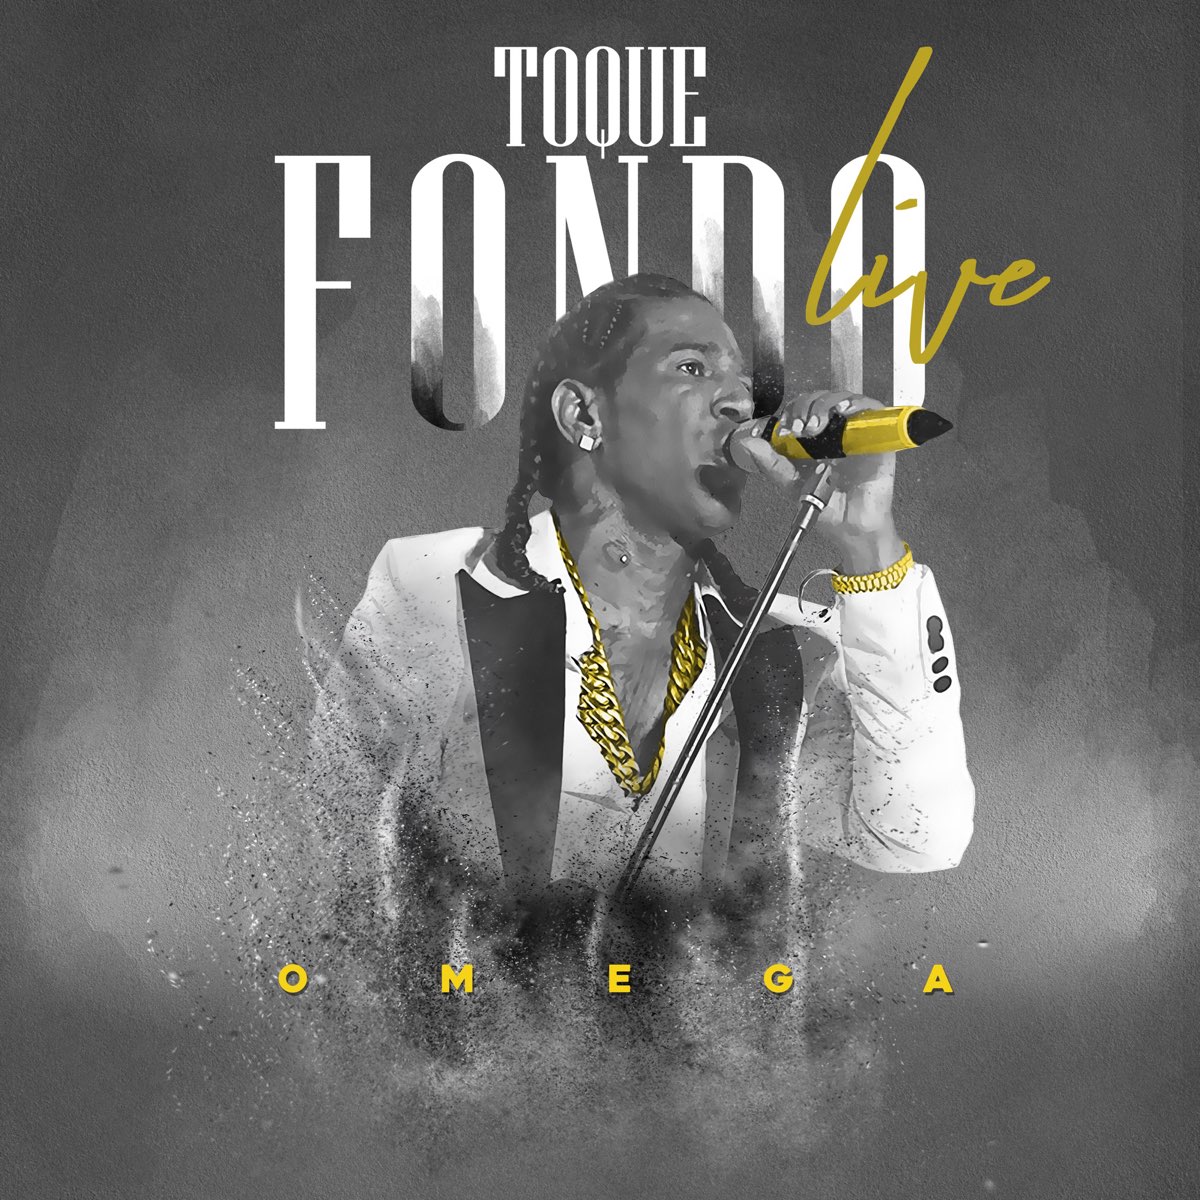 Toque Fondo - Single” álbum de Omega en Apple Music